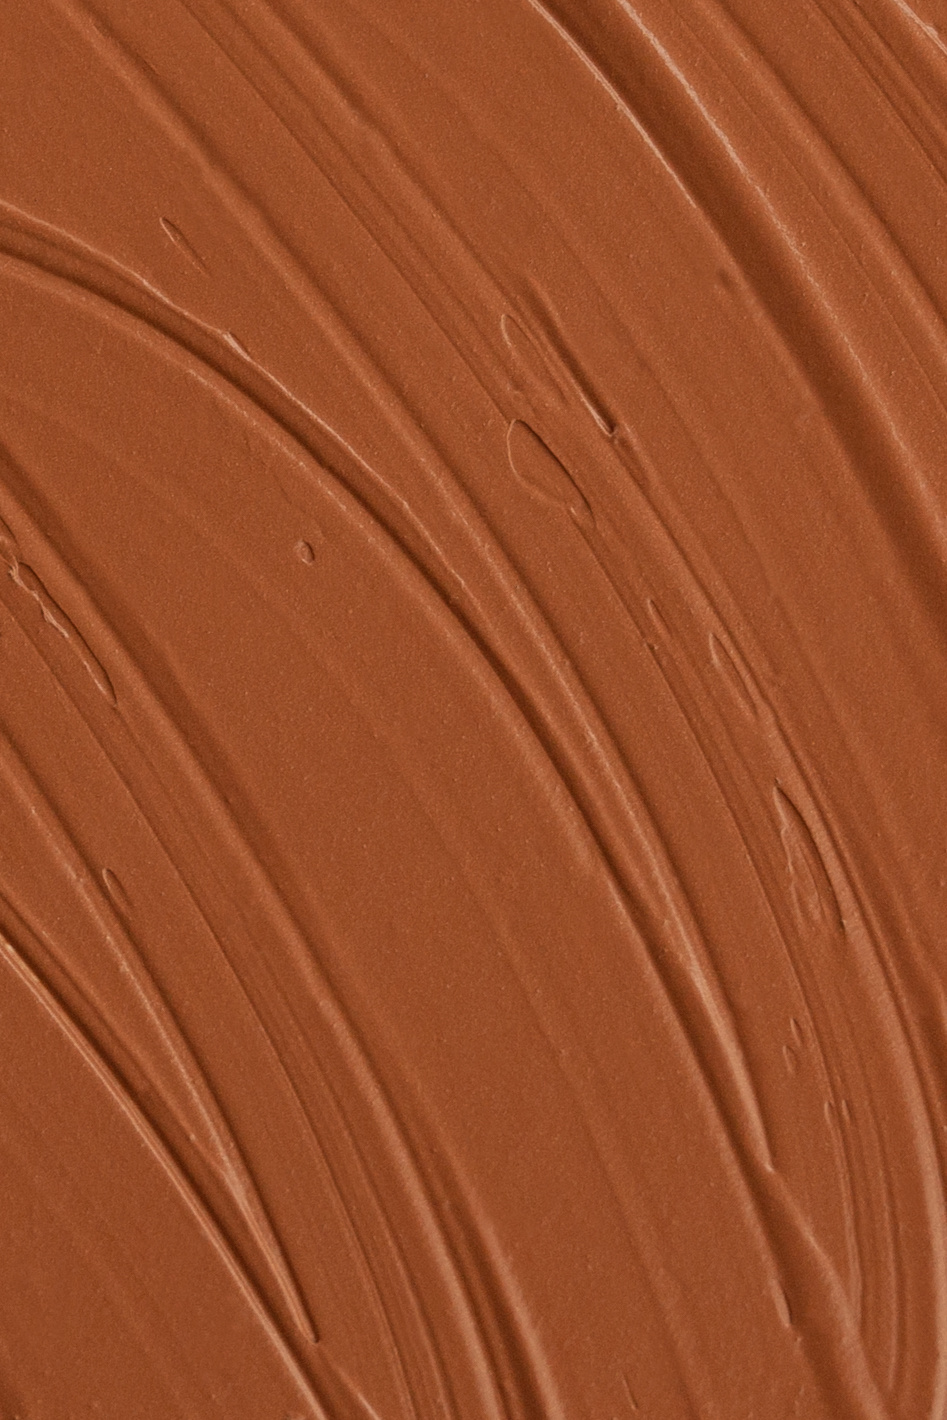 Liquid Foundation - 100C Chocolate-2